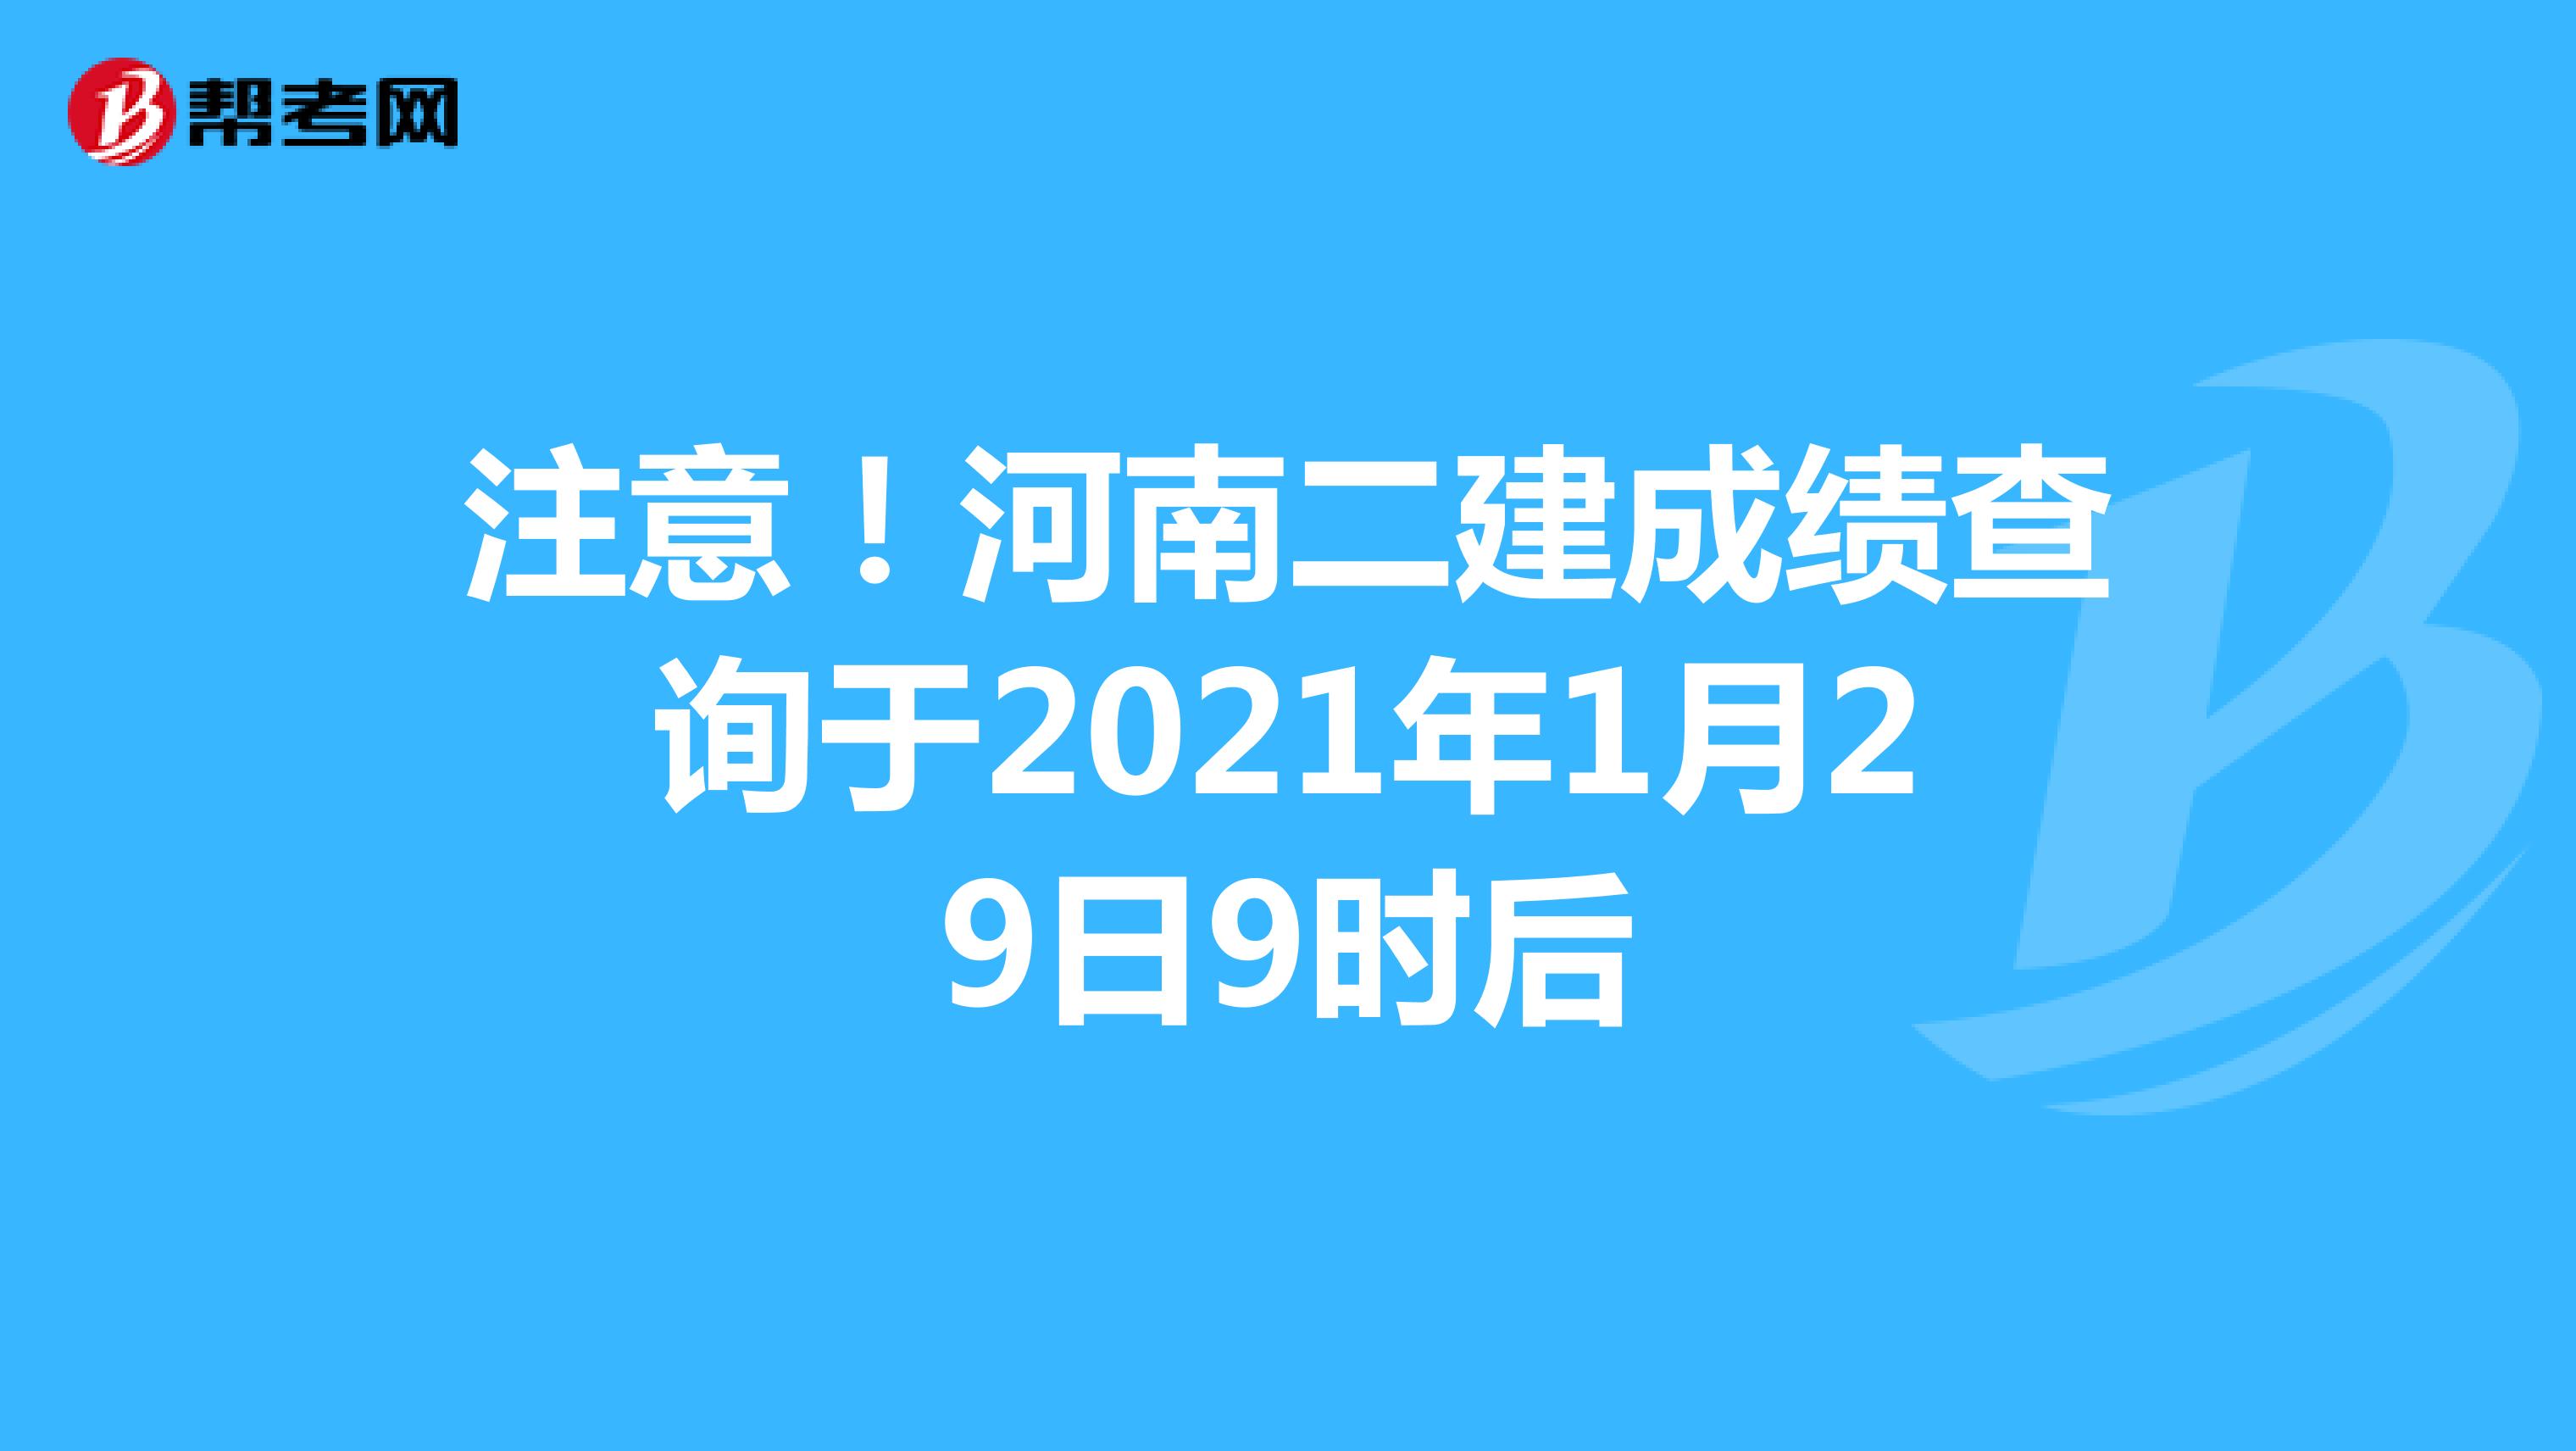 注意！河南二建成绩查询于2021年1月29日9时后